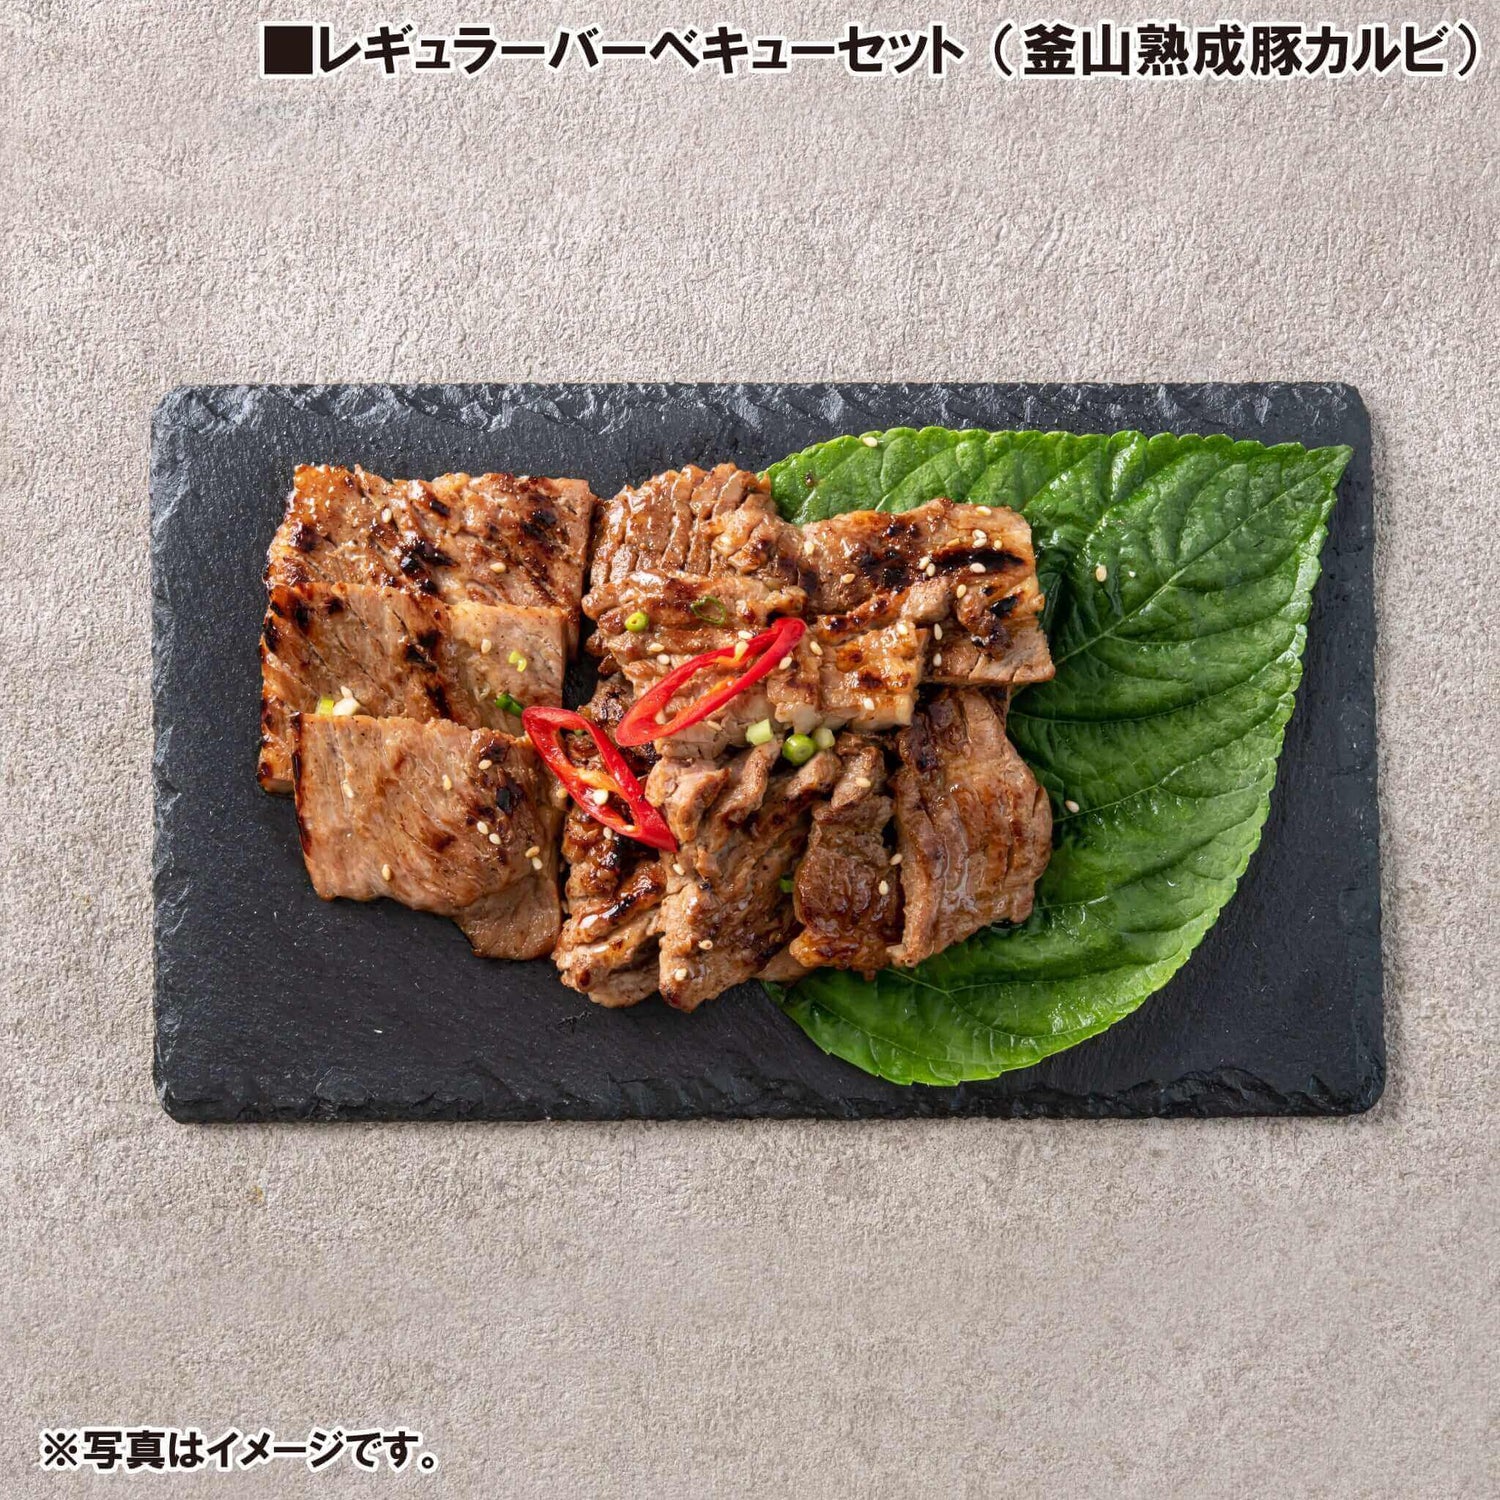 レギュラーバーベキューセット - 韓国惣菜bibim'ネットストア